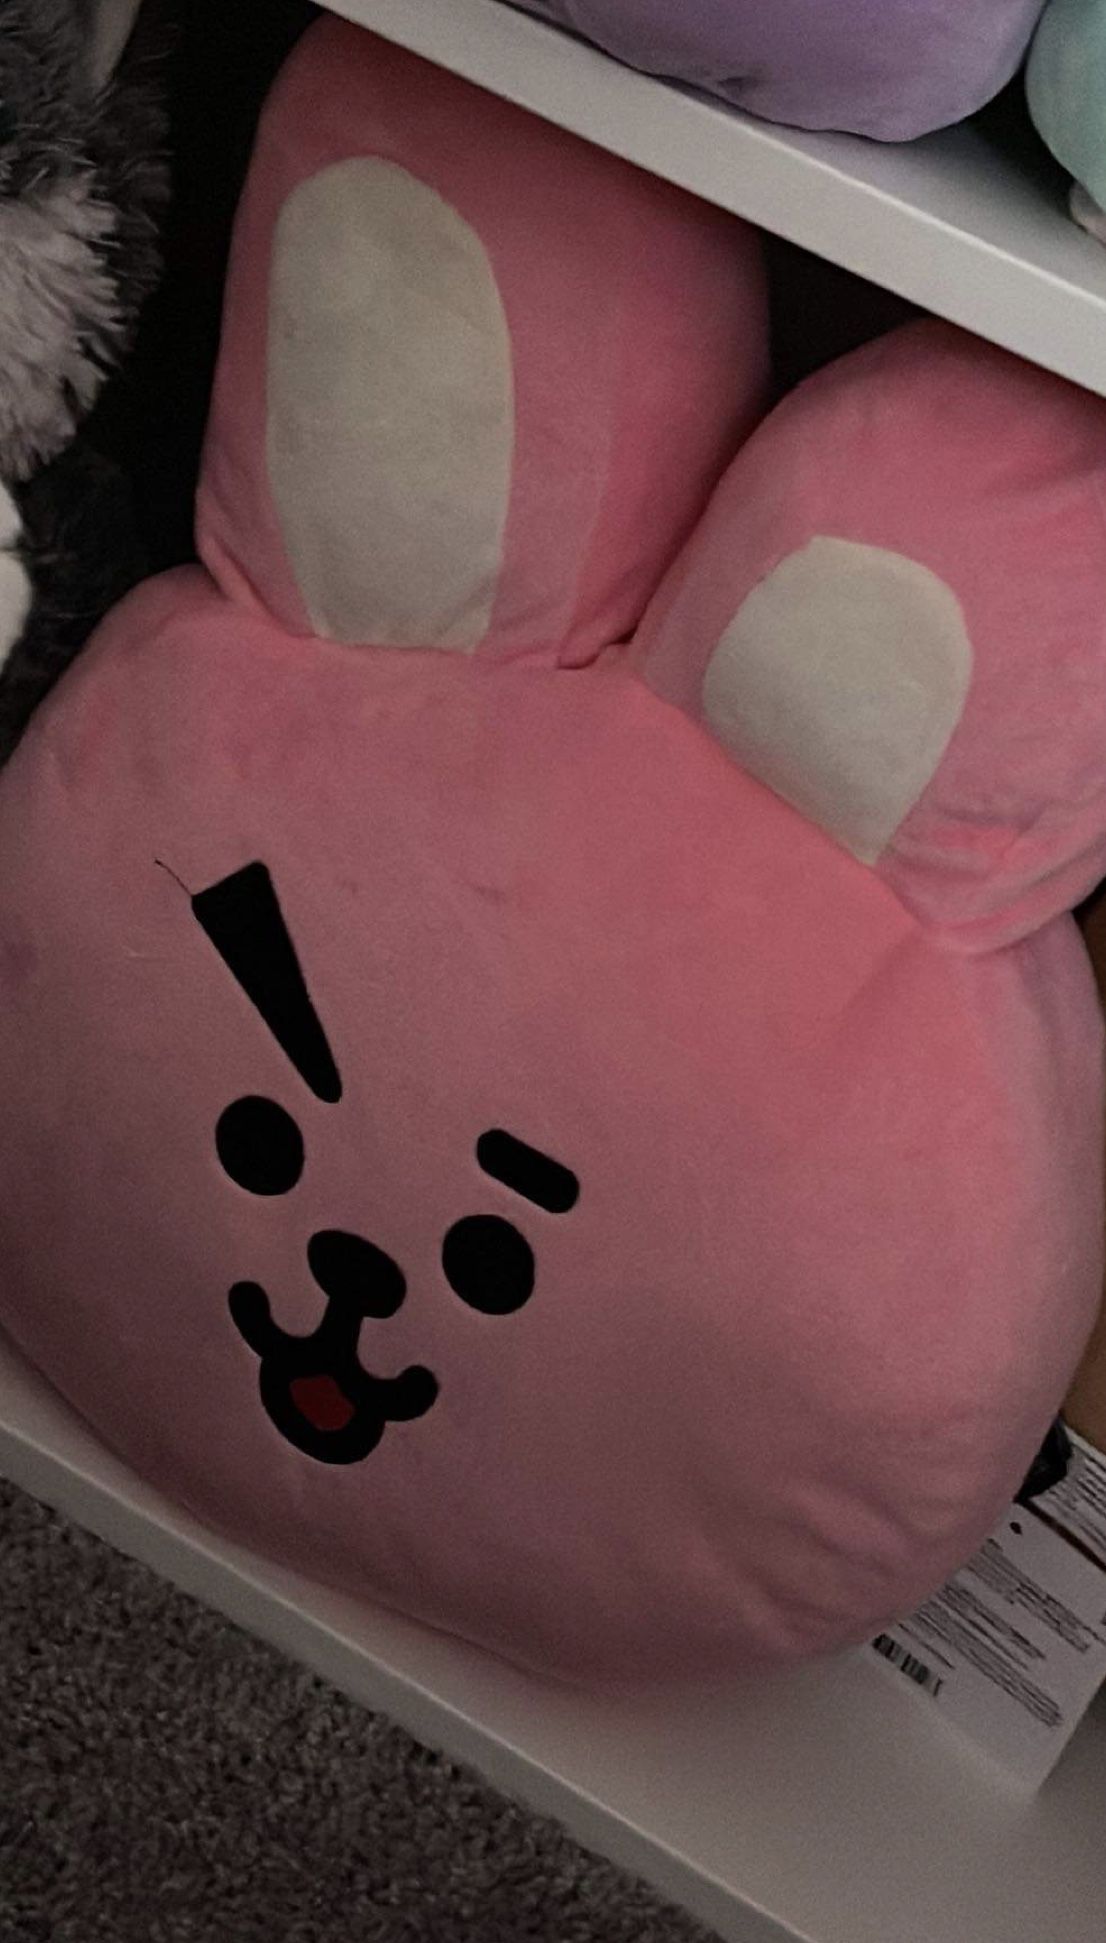 BTS BT21 Jungkook Cooky Bunny Face Pillow